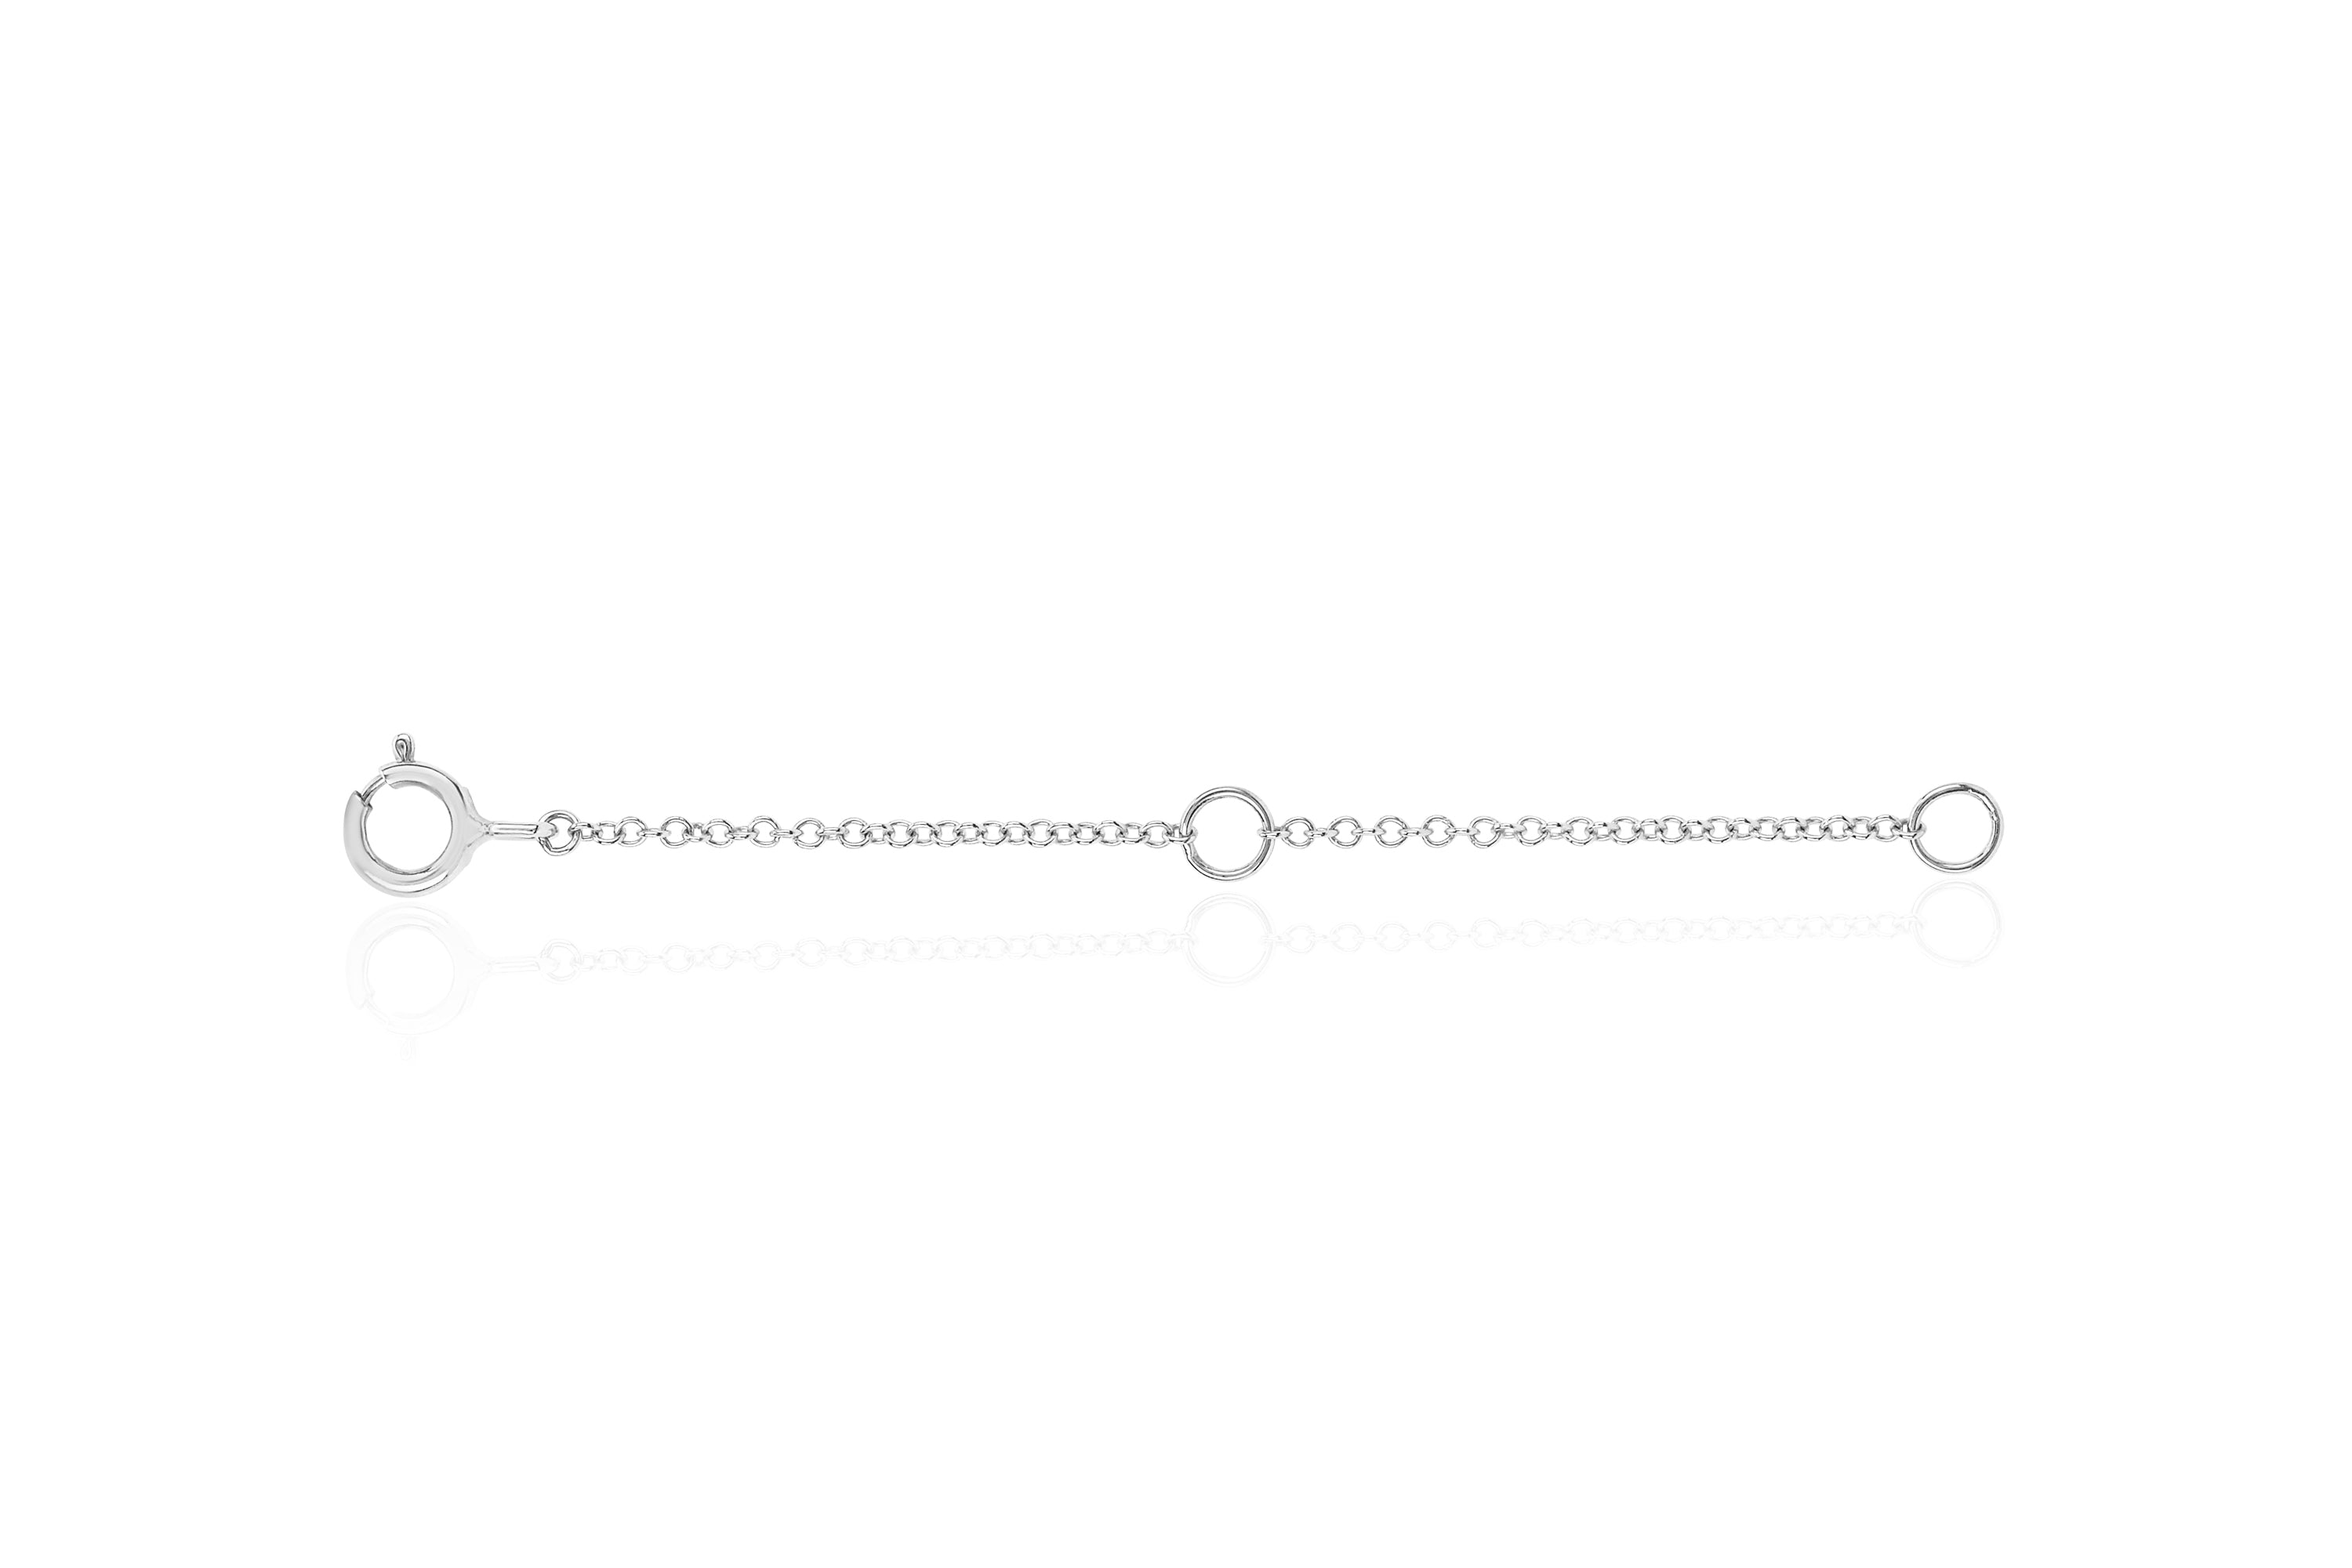 Necklace Extender, 15 PCS Chain Extenders for Necklaces, Premium